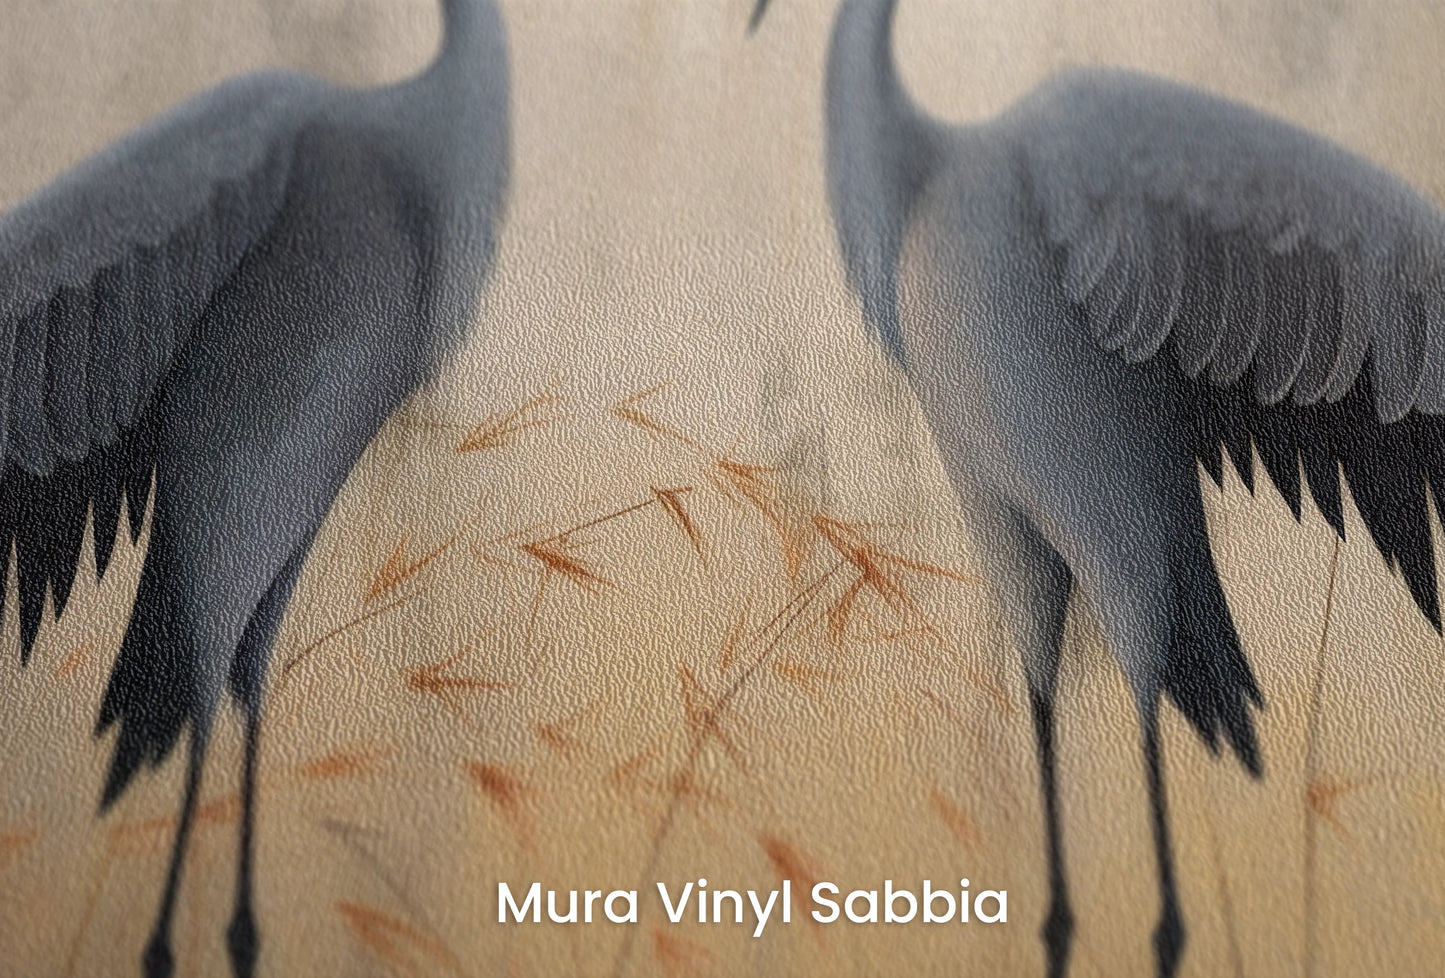 Zbliżenie na artystyczną fototapetę o nazwie Silent Dialogue na podłożu Mura Vinyl Sabbia struktura grubego ziarna piasku.